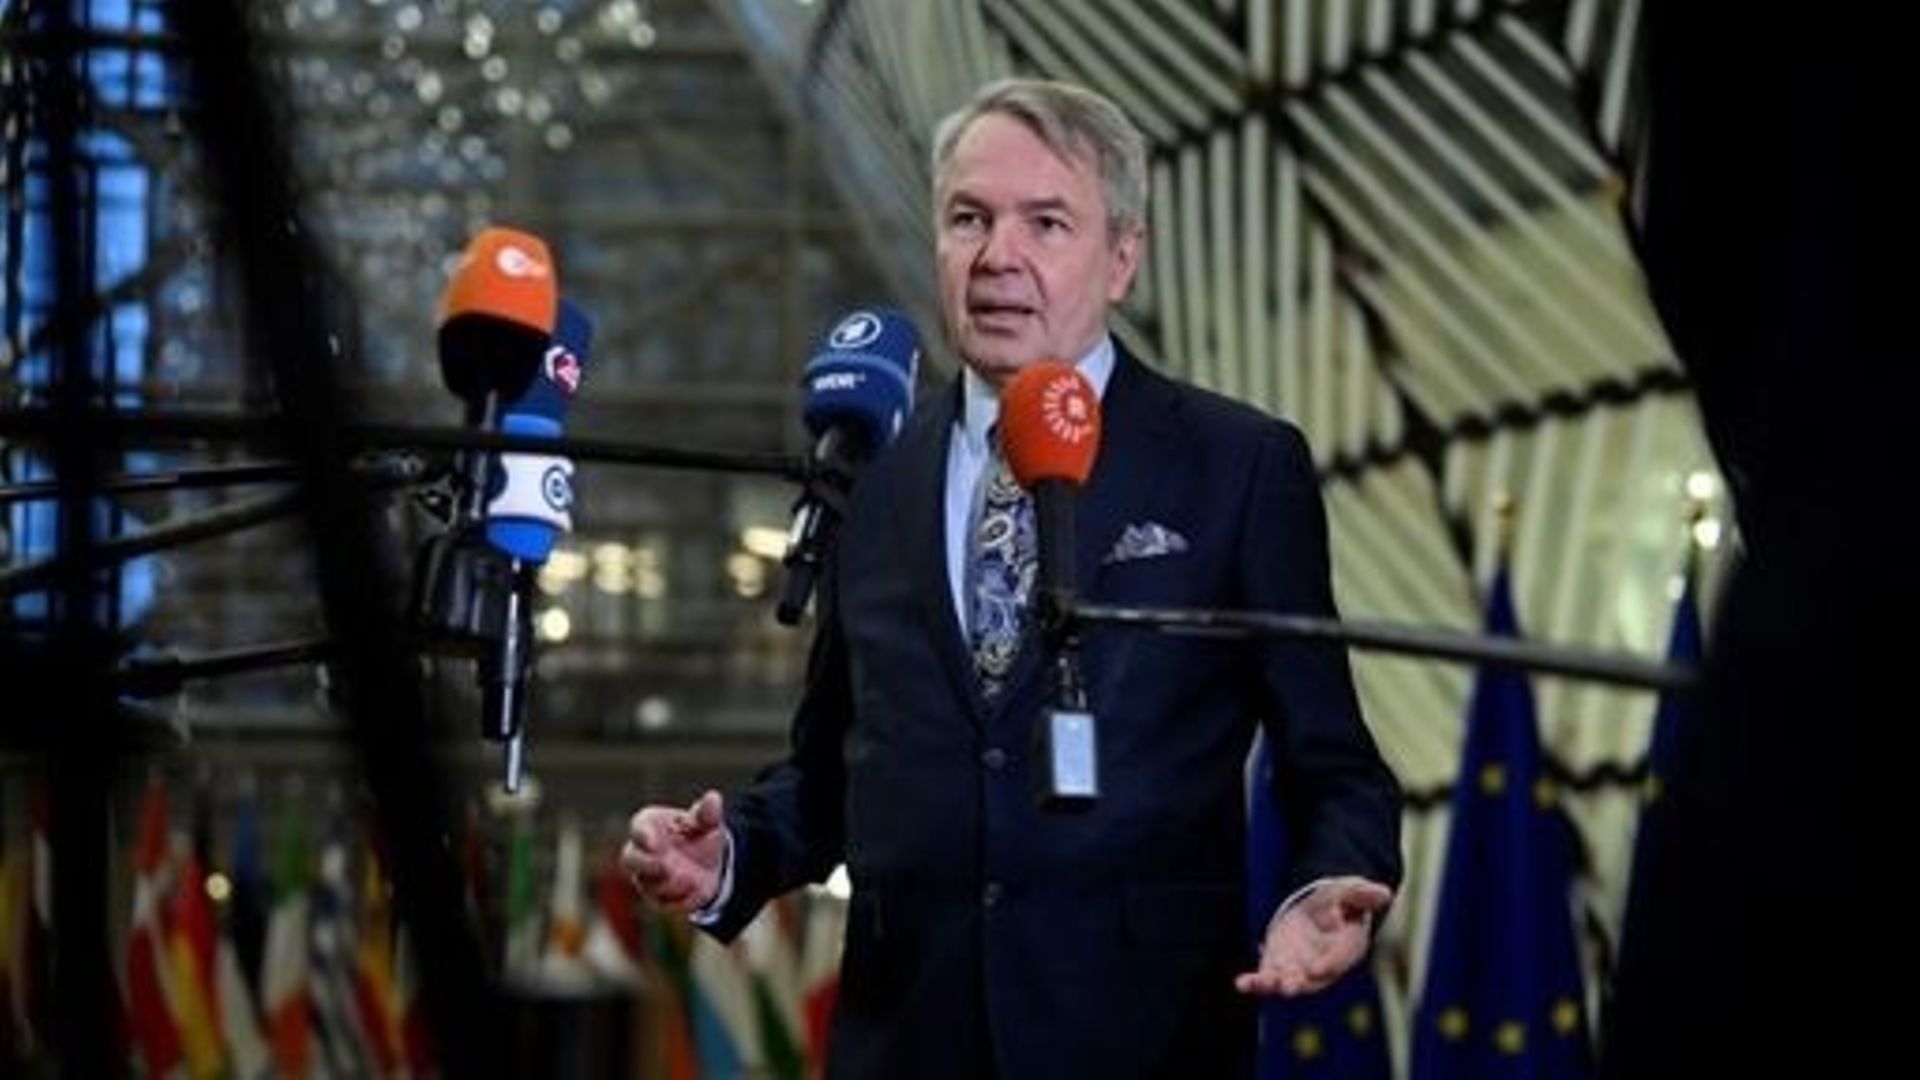 Le ministre finlandais des Affaires étrangères, Pekka Haavisto, parle à la presse lors d’une réunion des ministres des Affaires étrangères de l’UE à Bruxelles, le 23 janvier 2023. John THYS / AFP